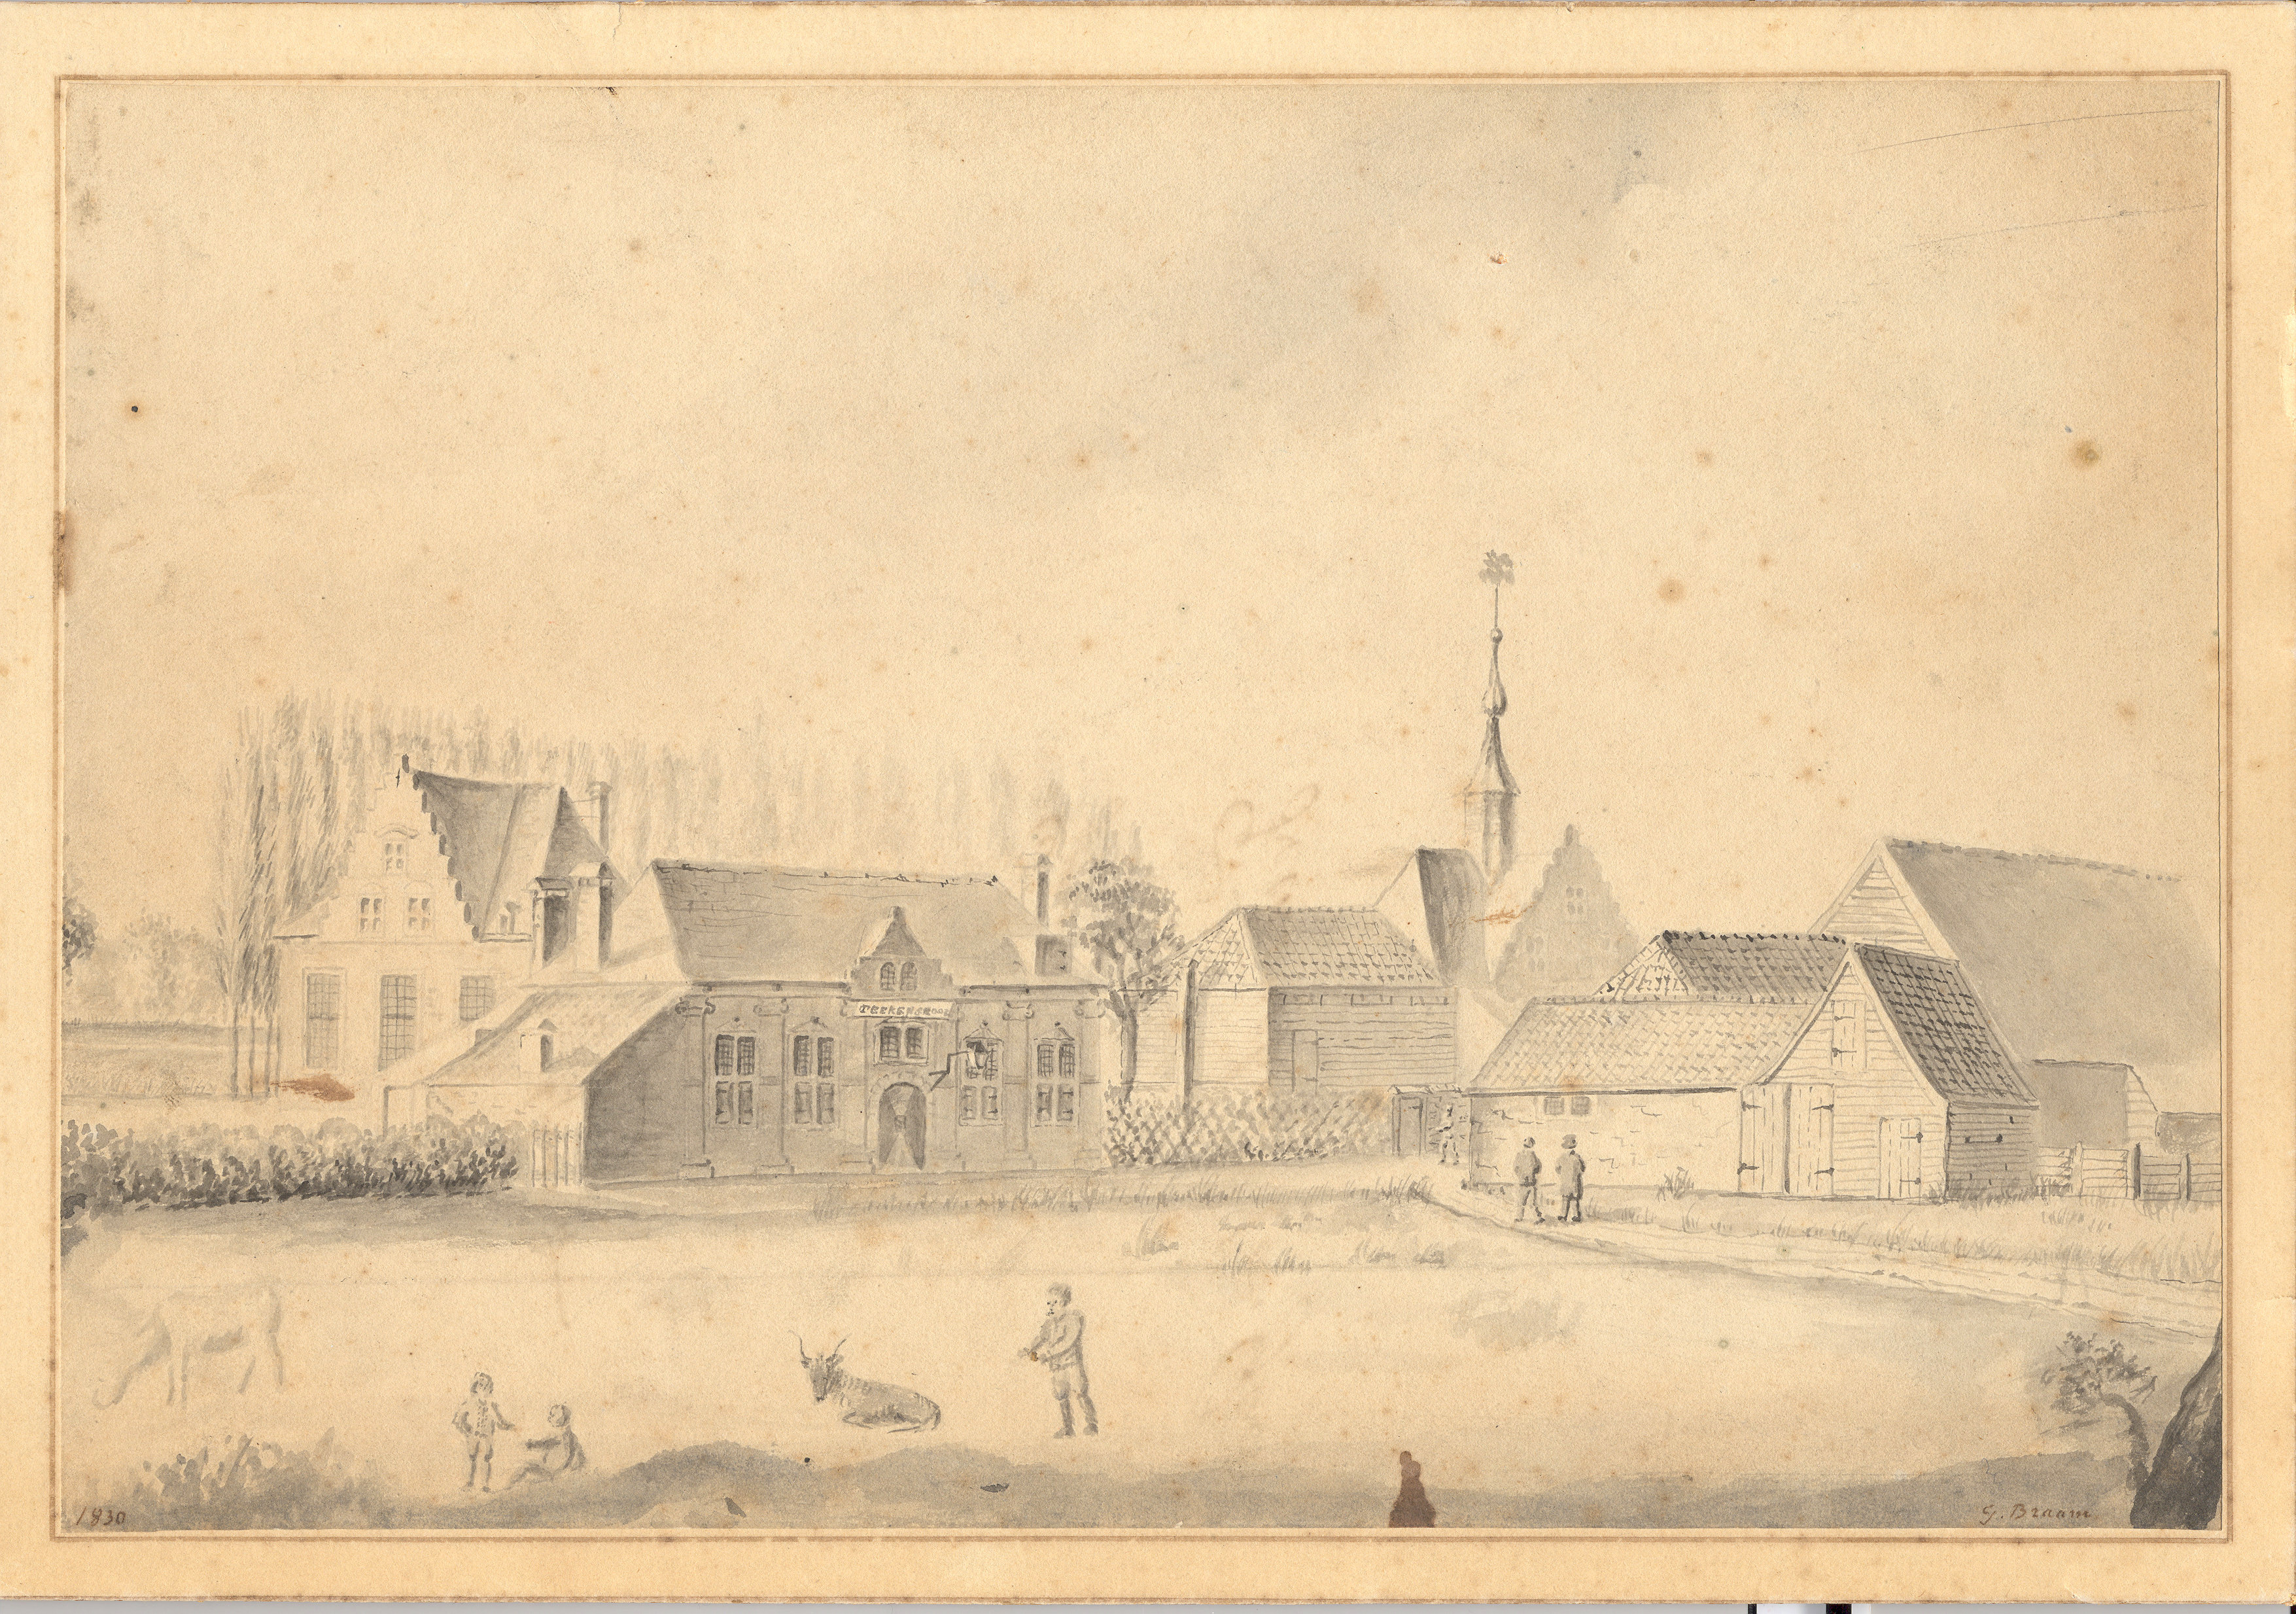 Stadstekenschool, voormalige schutterij St. Sebastiaan, 1830.